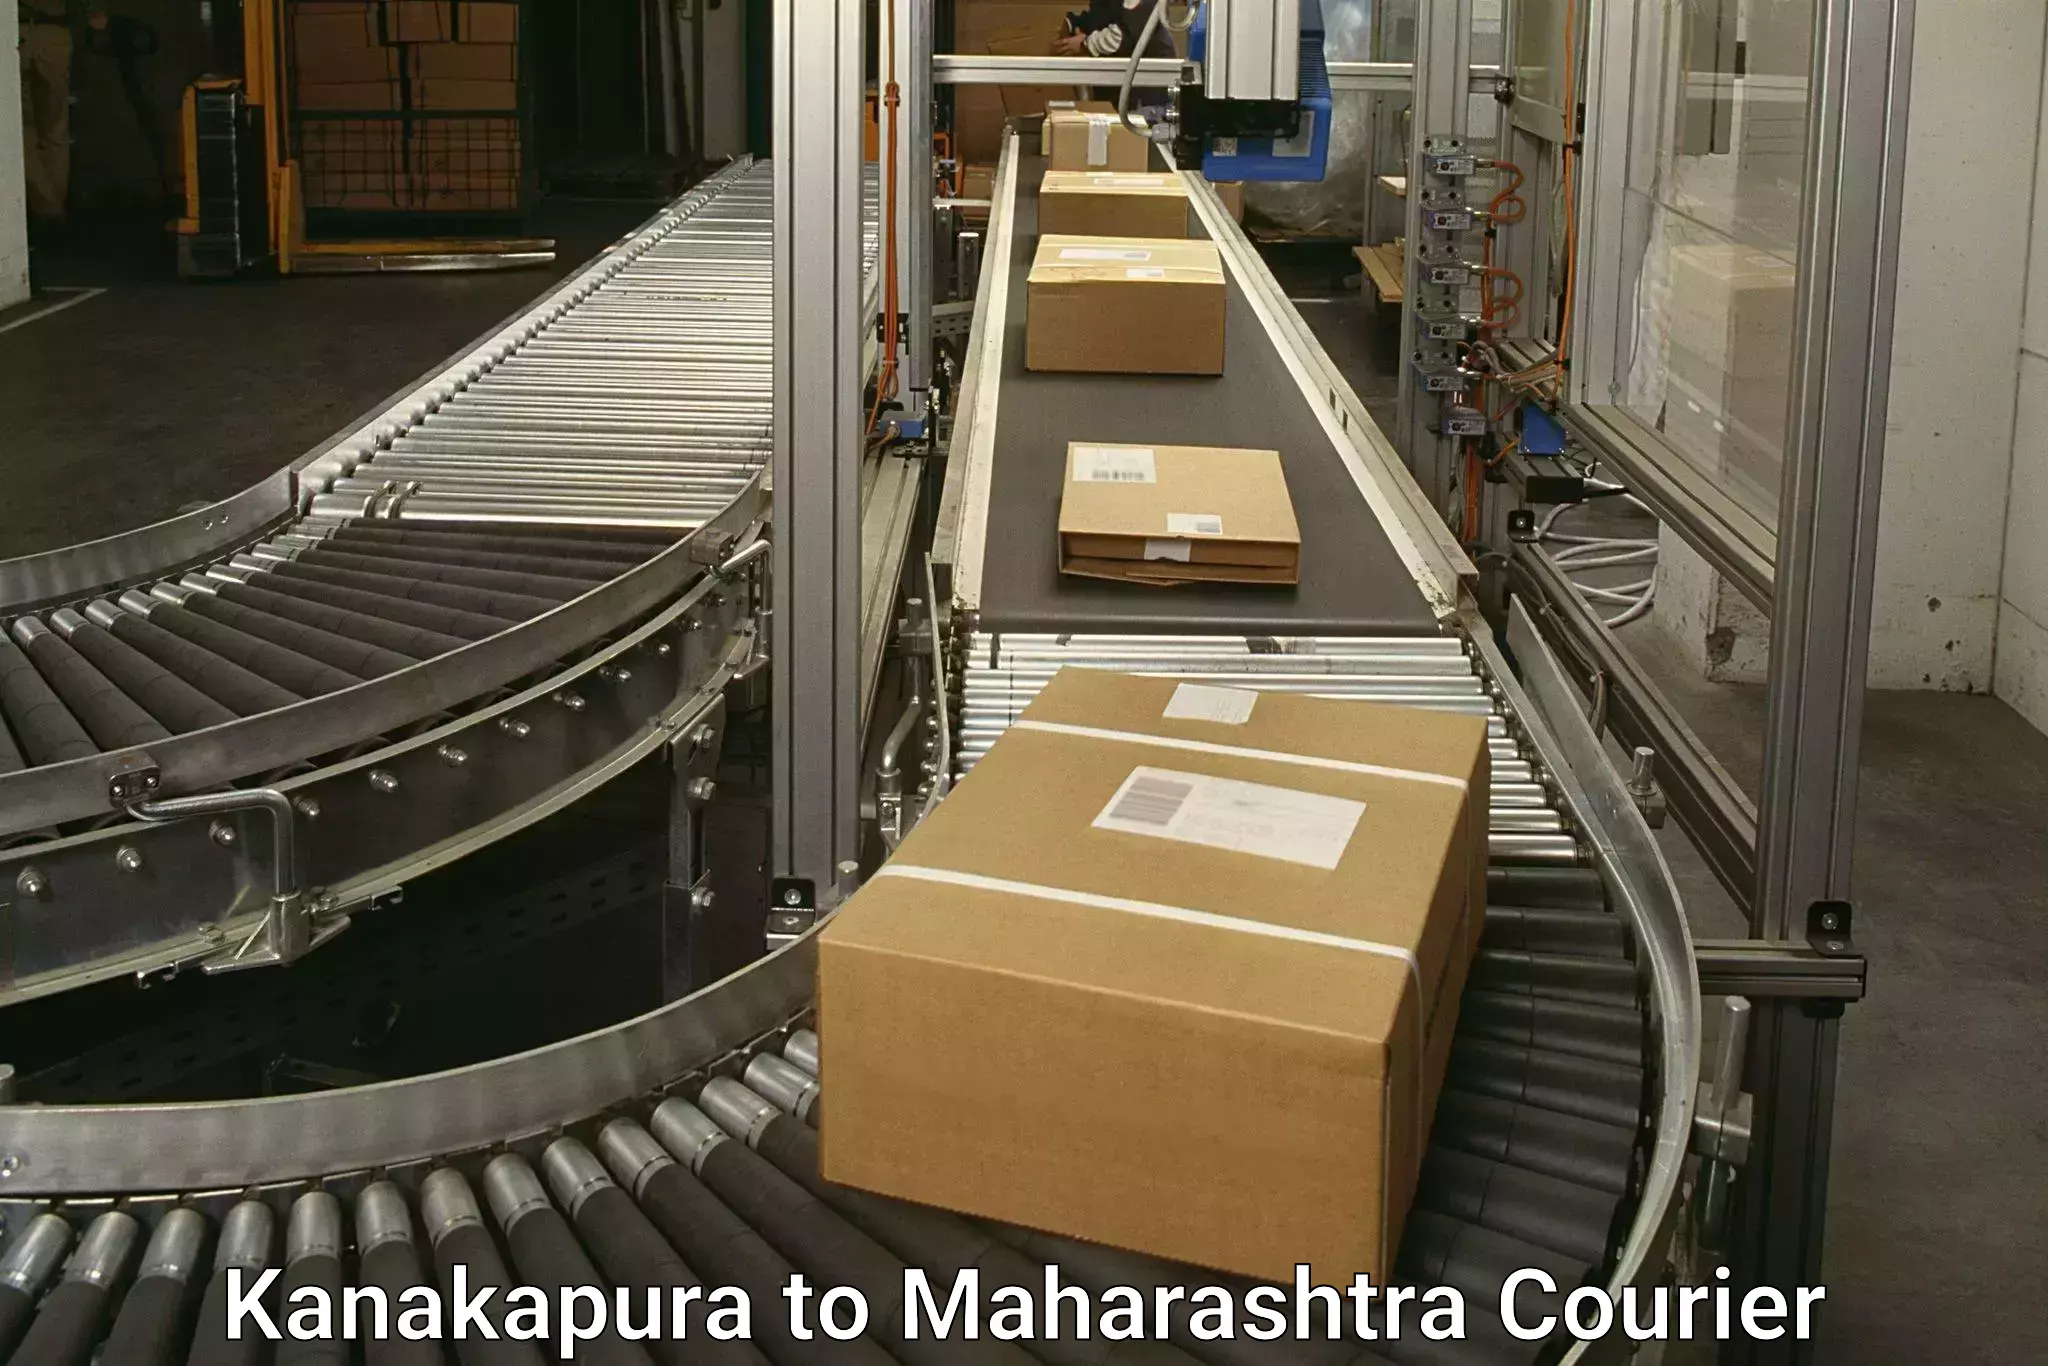 Nationwide courier service Kanakapura to Bhiwandi